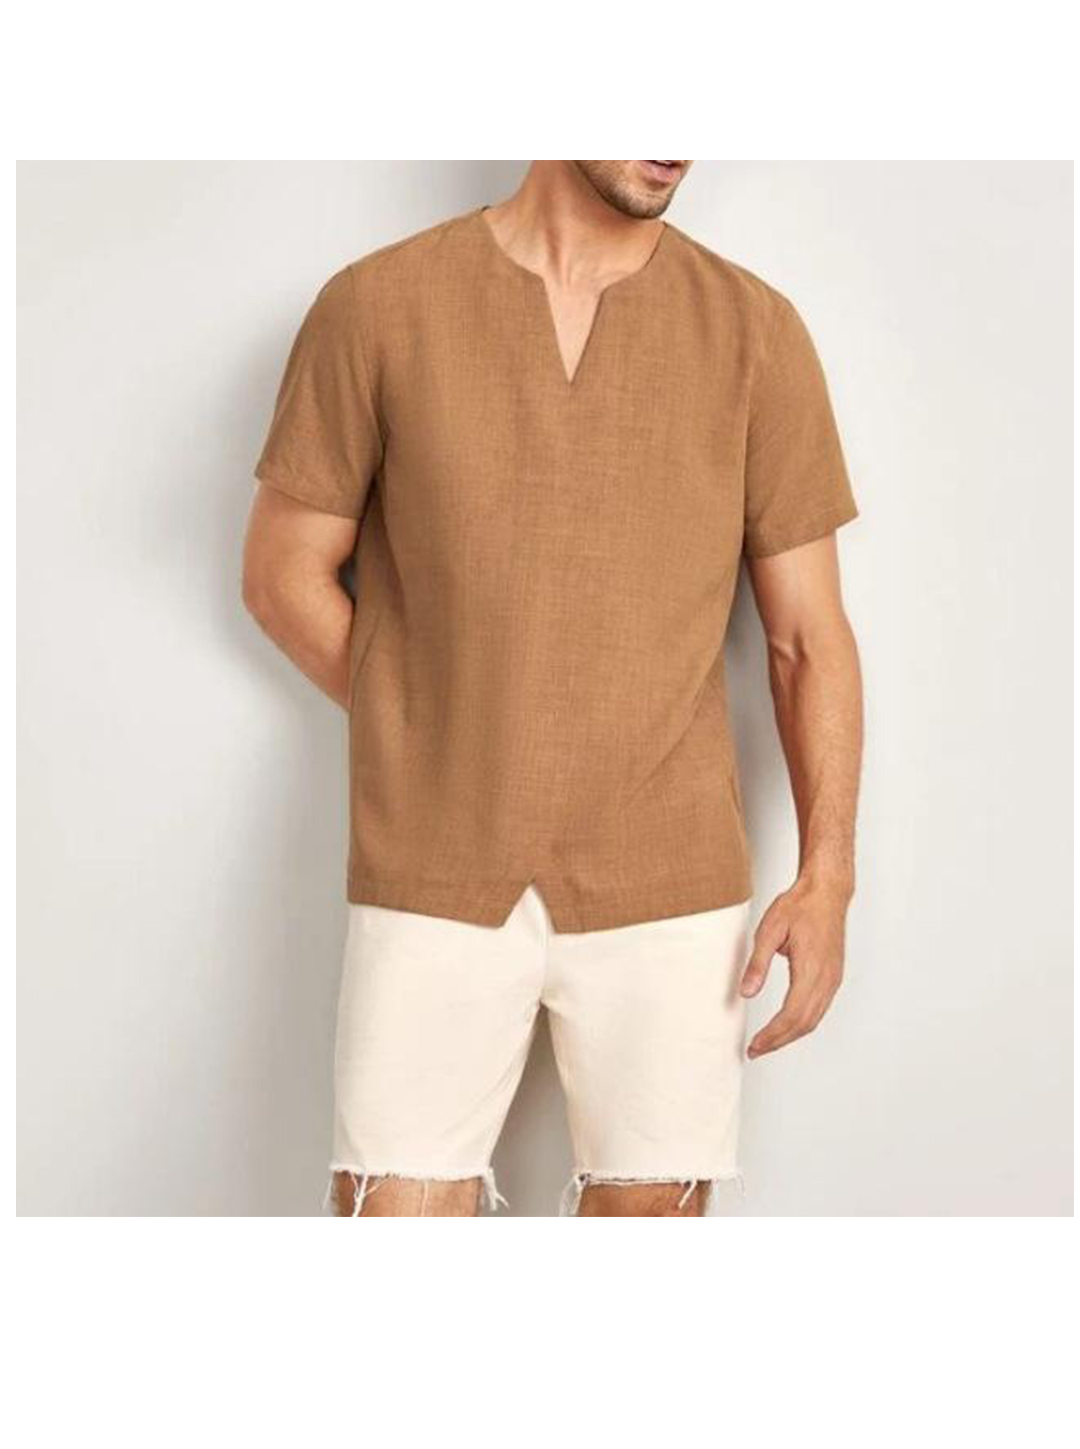 Men's Larkin Summer Five-quarter Sleeve Short-sleeved Casual Shirt-poisonstreetwear.com